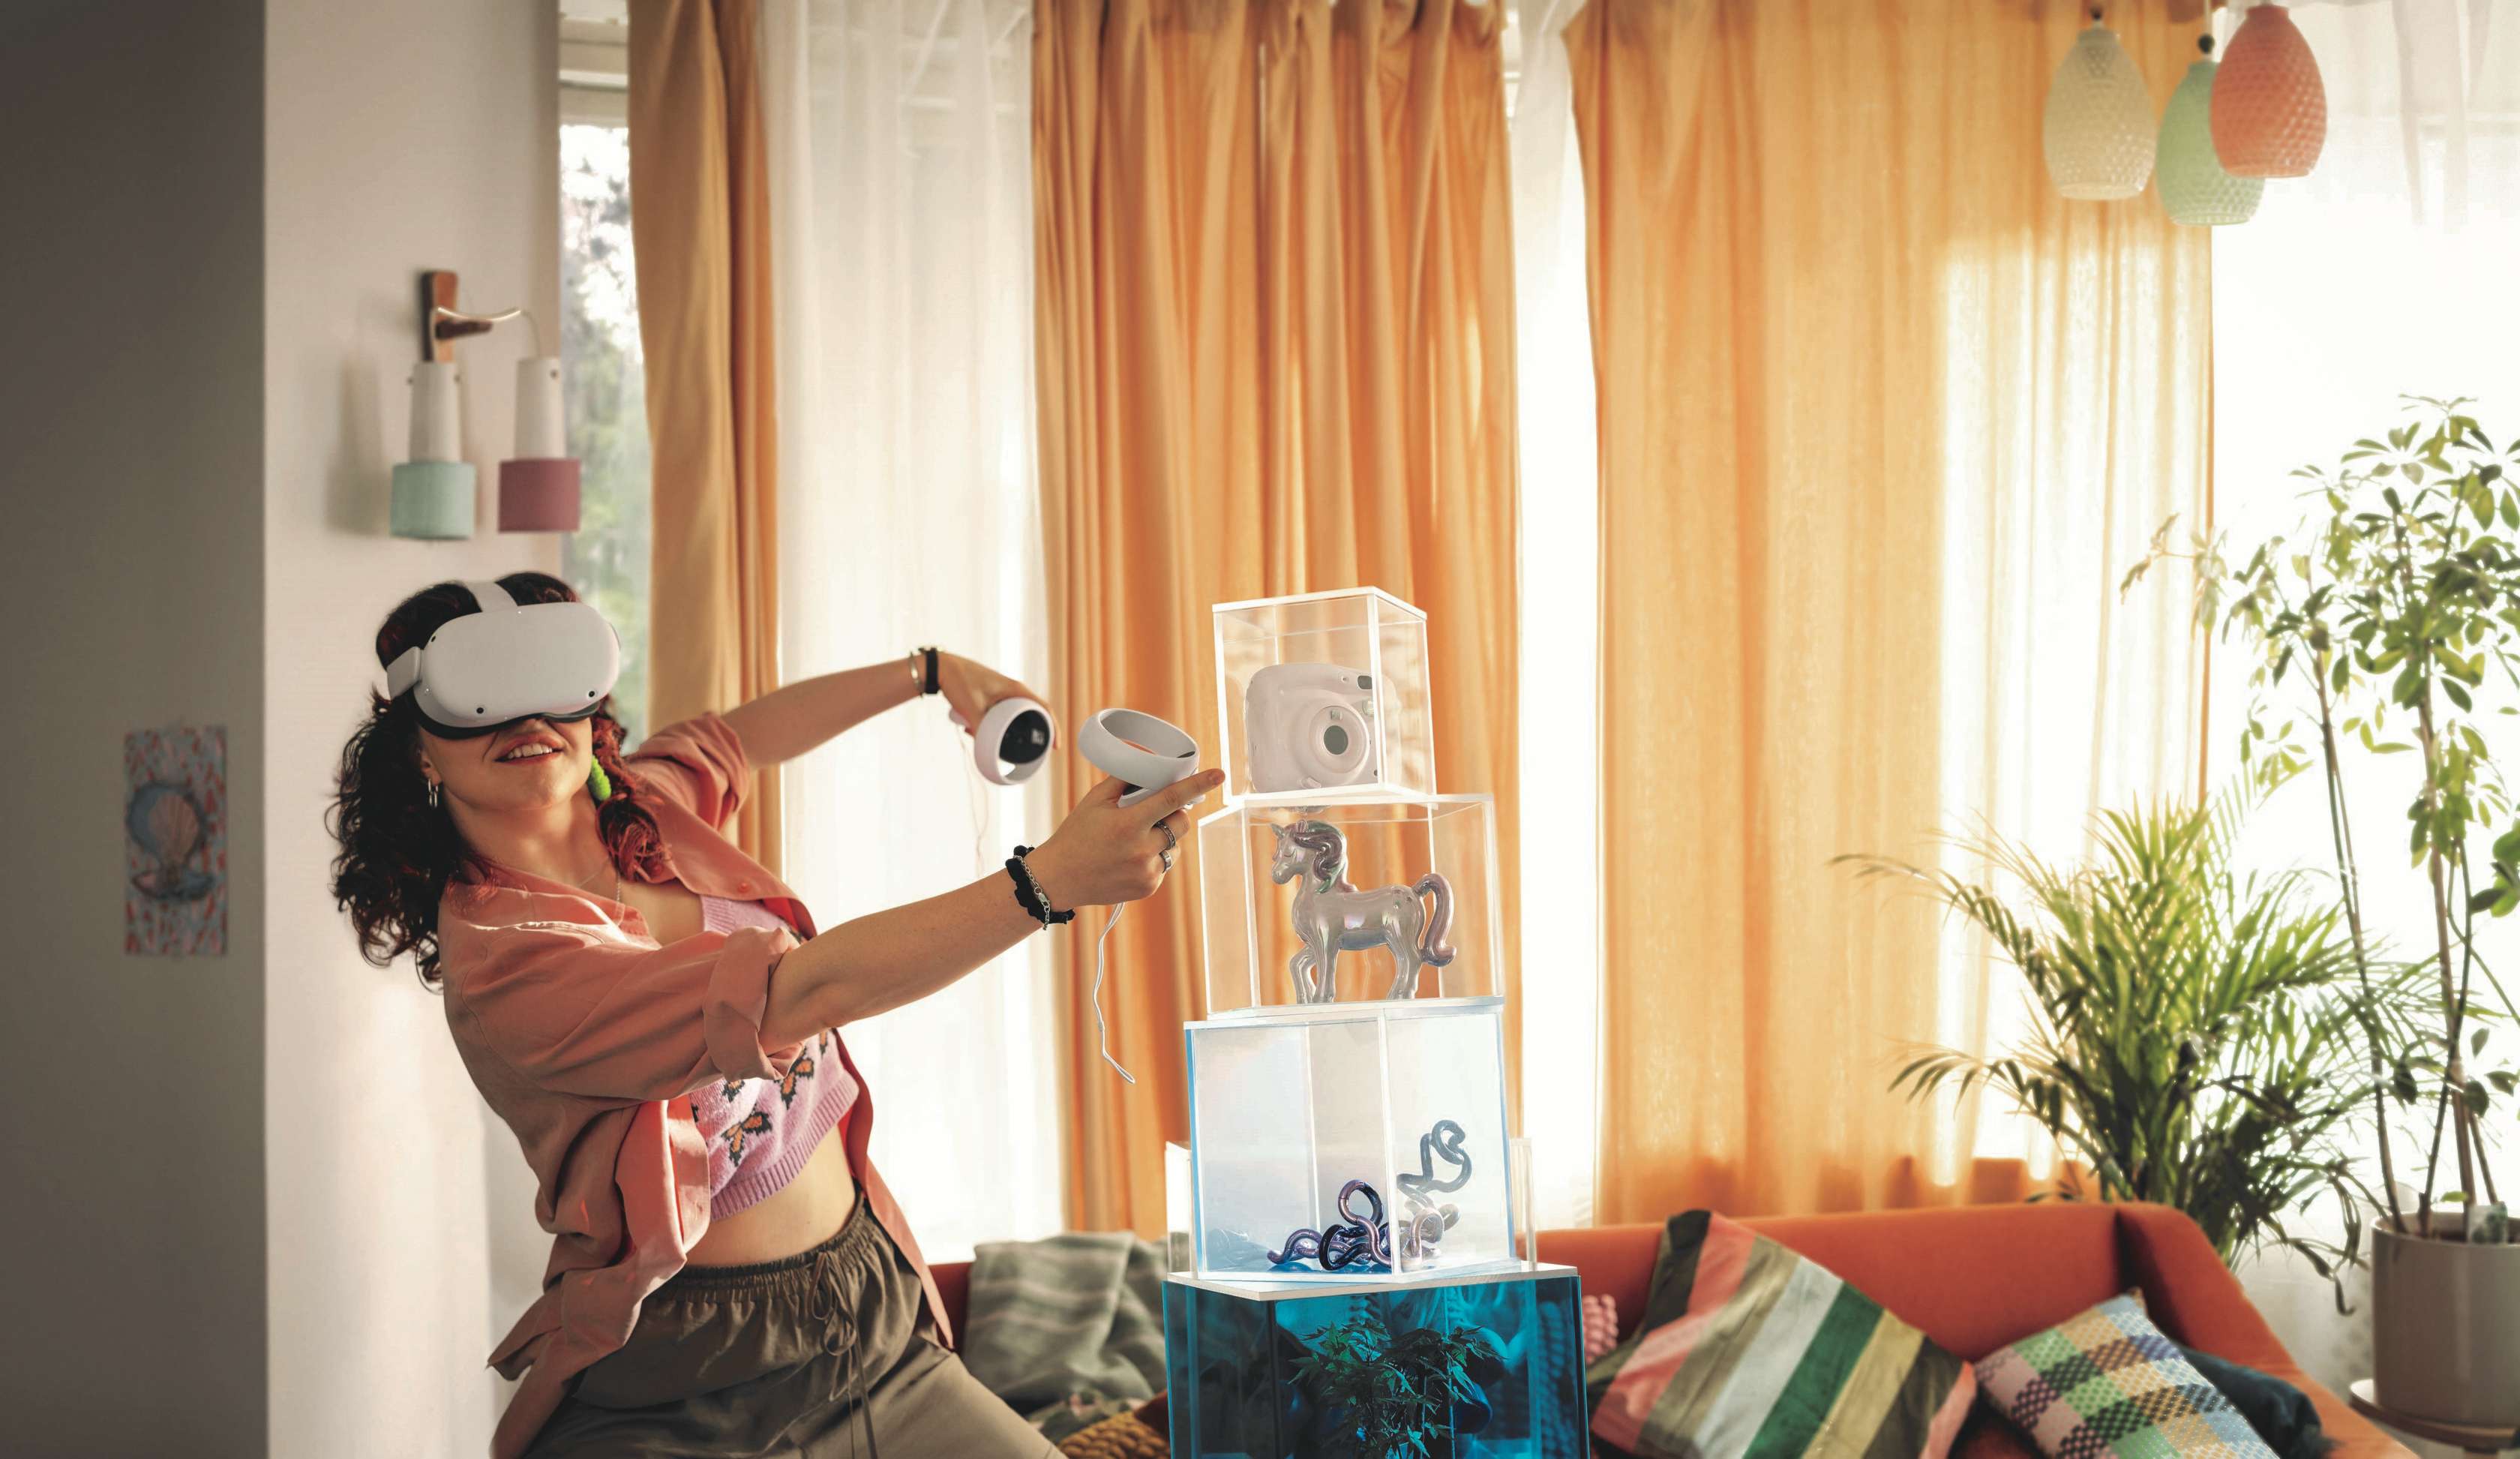 Gegenstandsschutz: Eine junge Frau mit VR-Brille und Fernbedienung bewegt sich durch ein Wohnzimmer